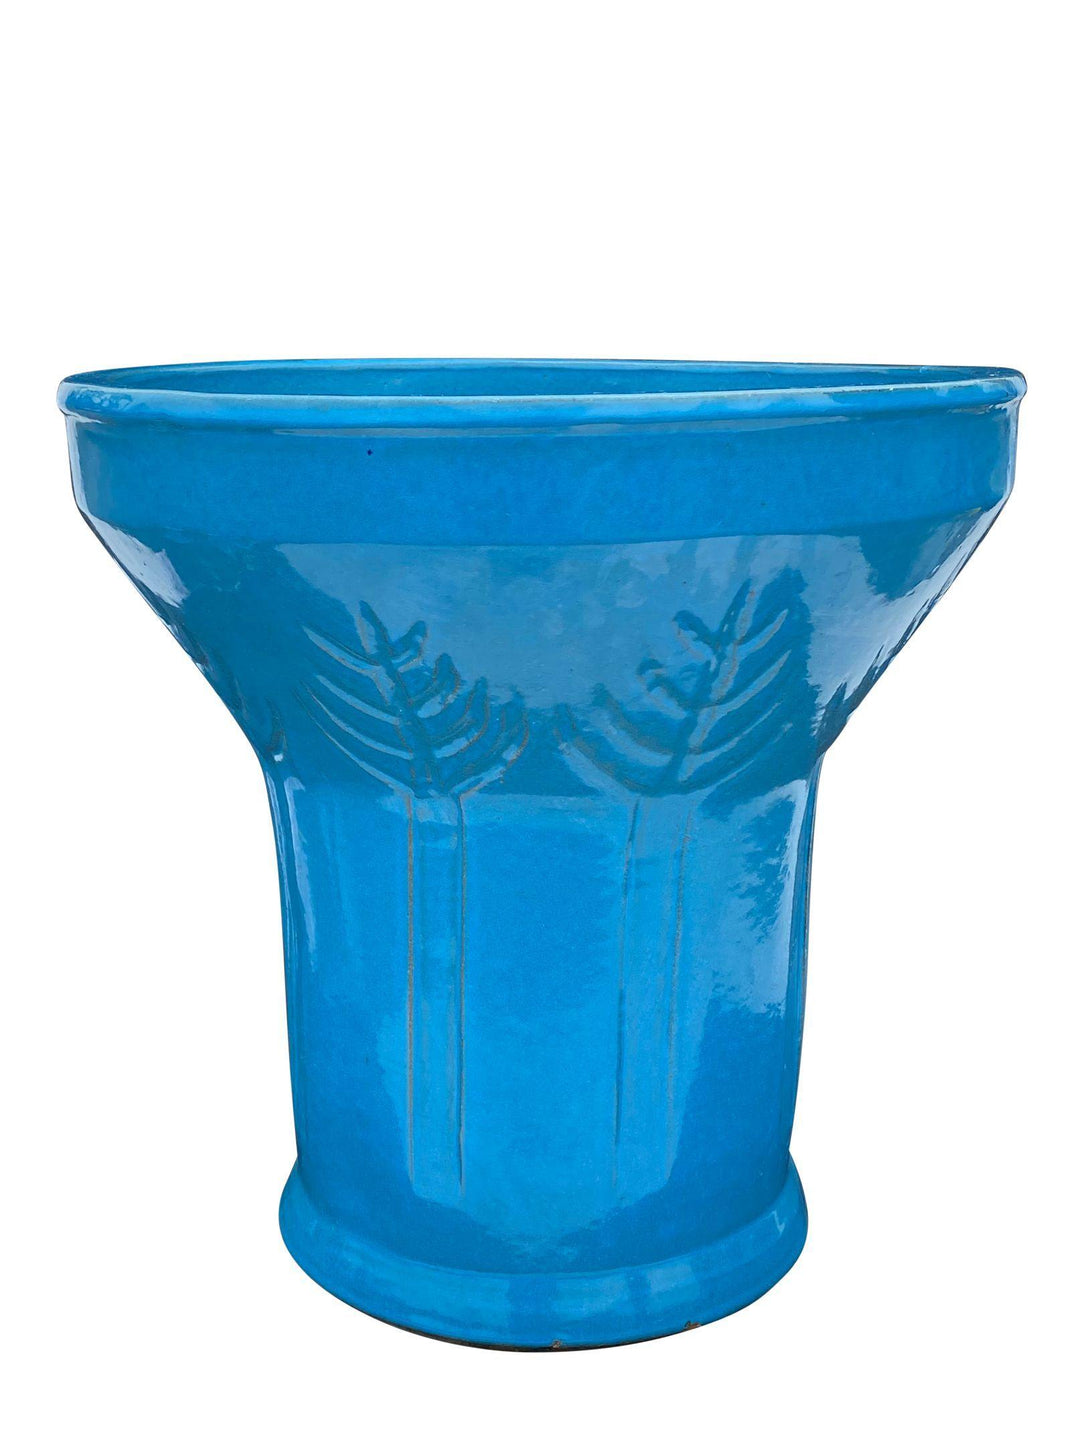 Light Blue Round Floral Ceramic Planter | Ten Thousand Pots